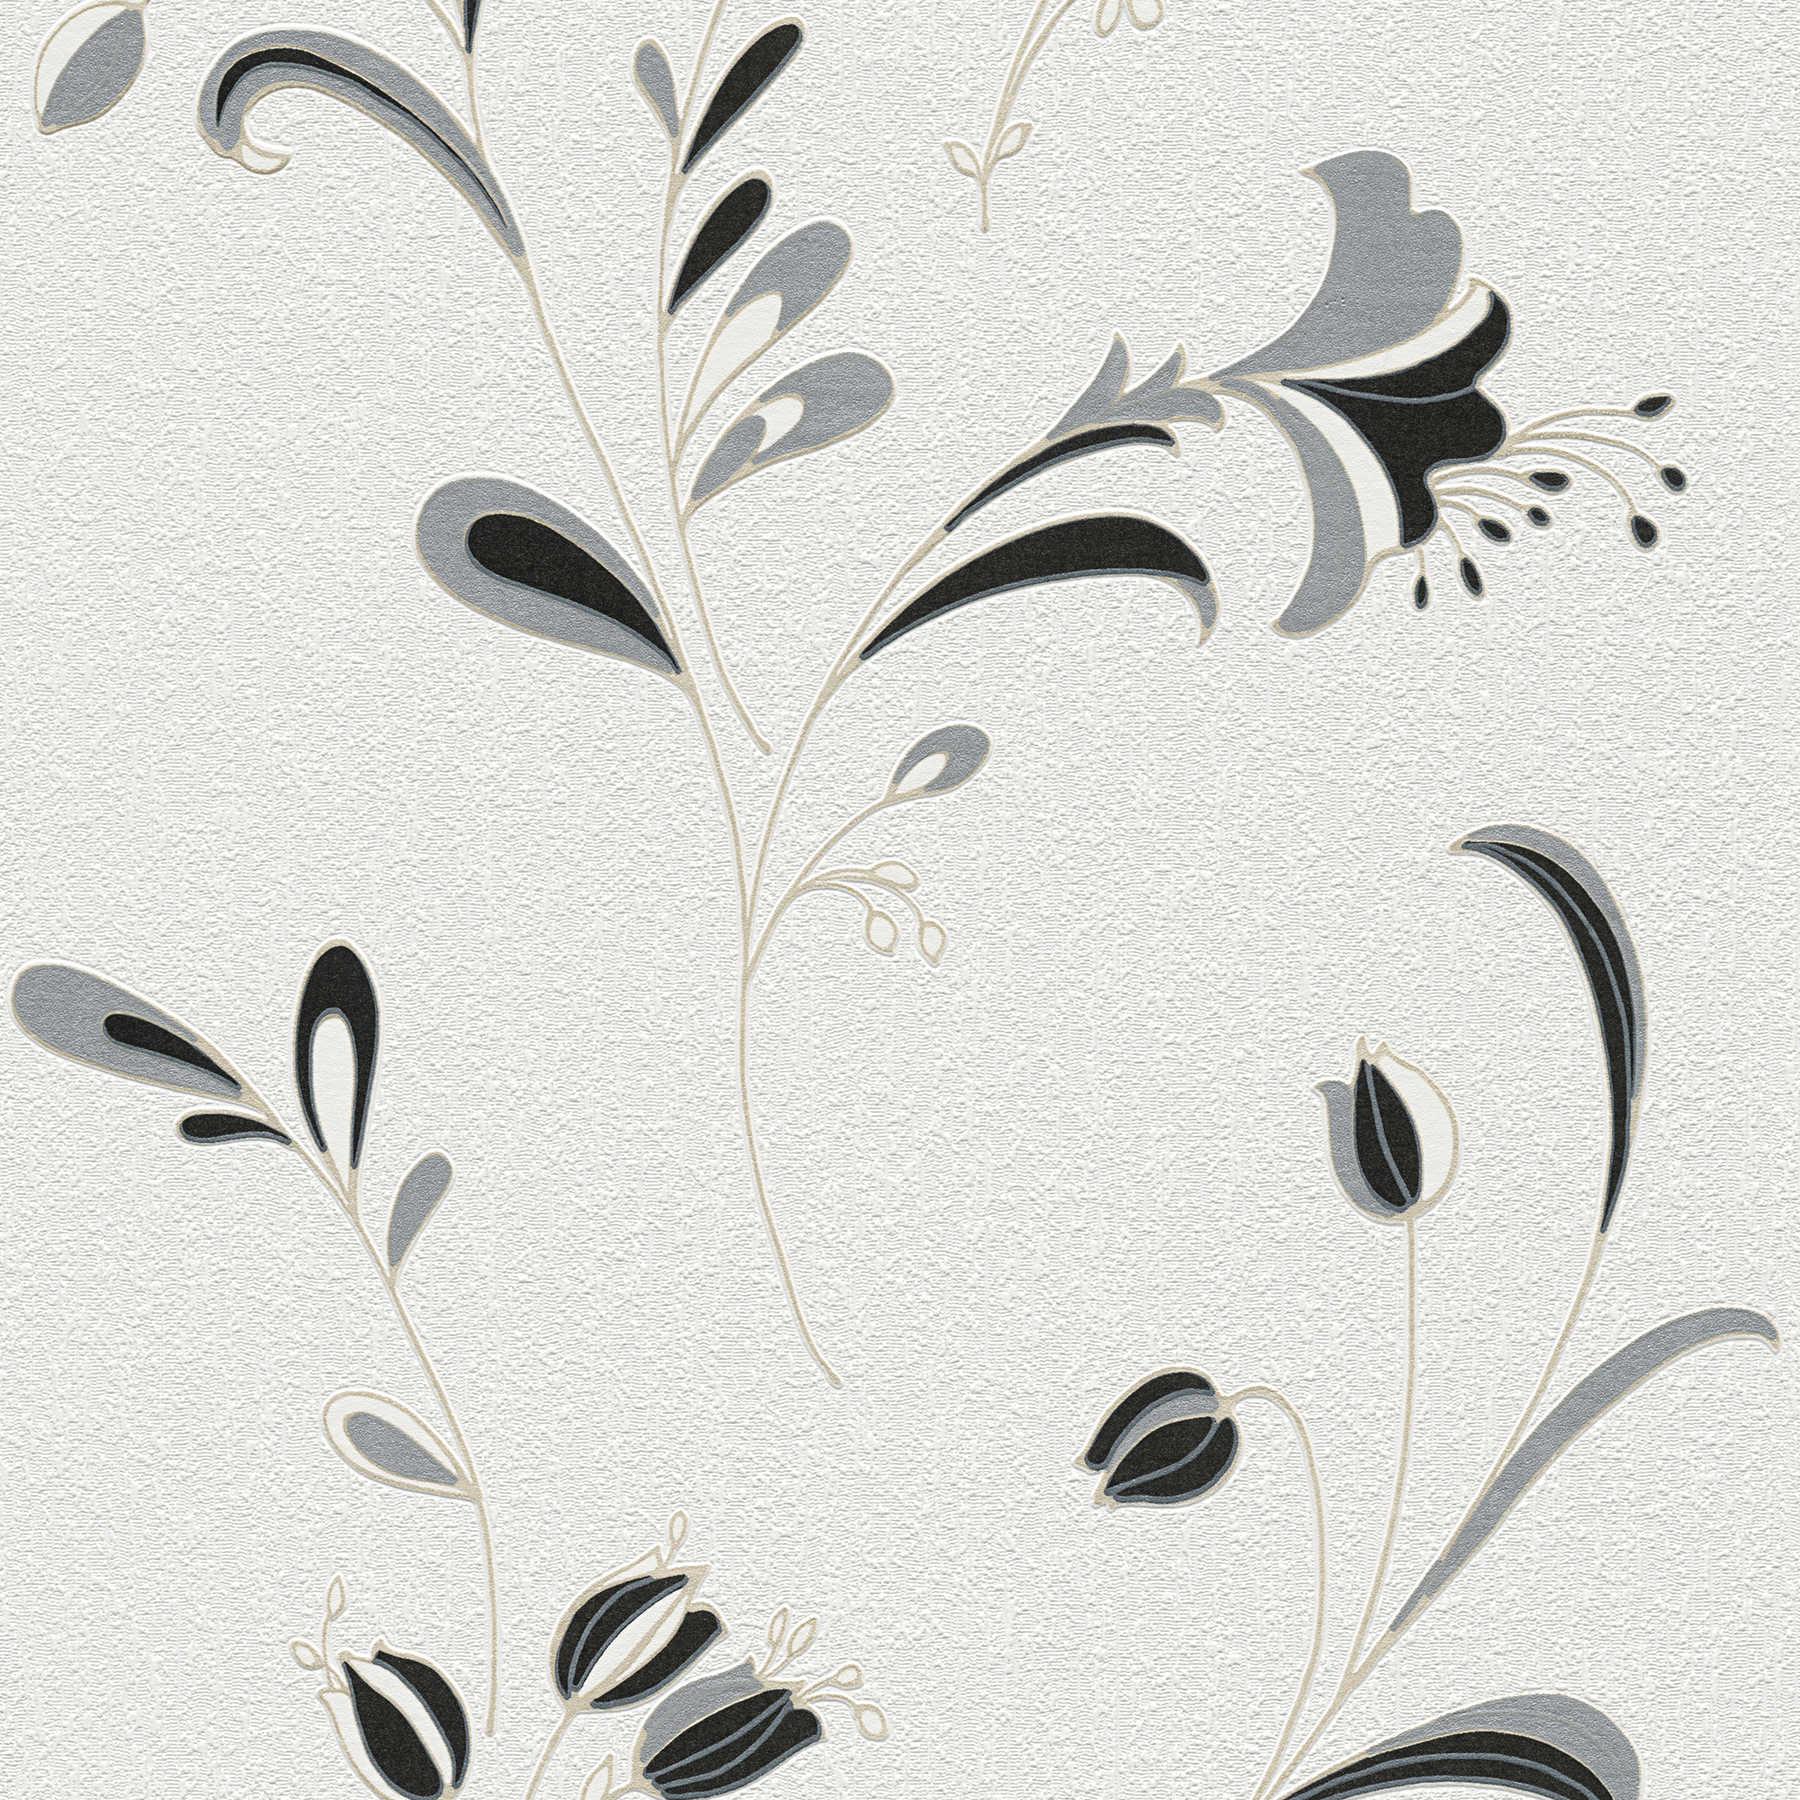 Behang bloemmotief, zilveren accenten & structuurpatroon - zwart, wit, zilver
